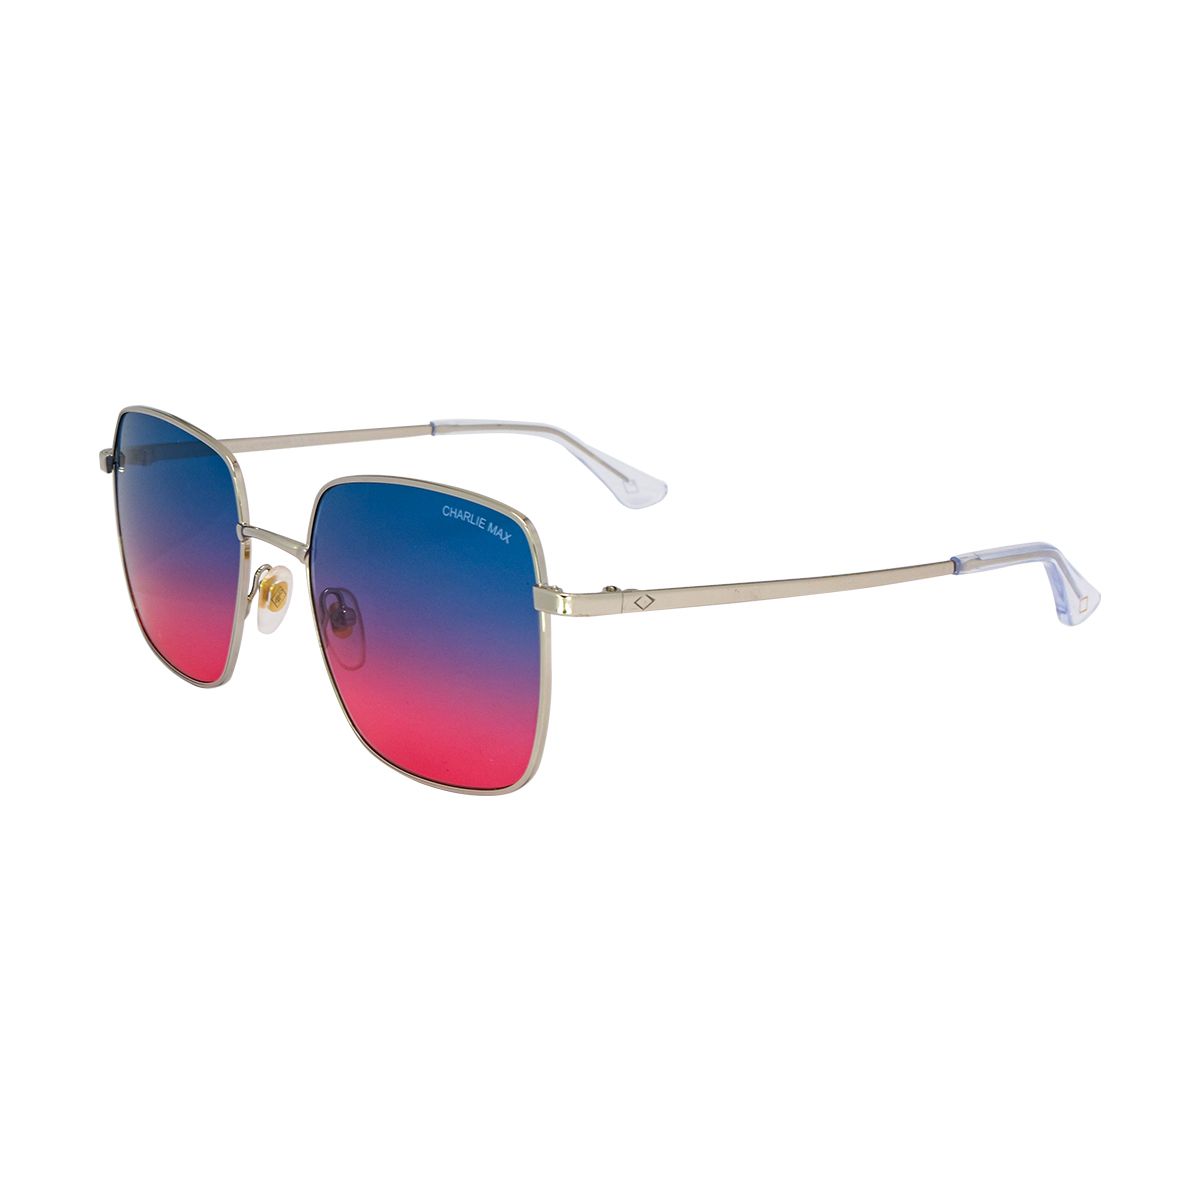 BULLONA Square Sunglasses SL-BR2 - size 56